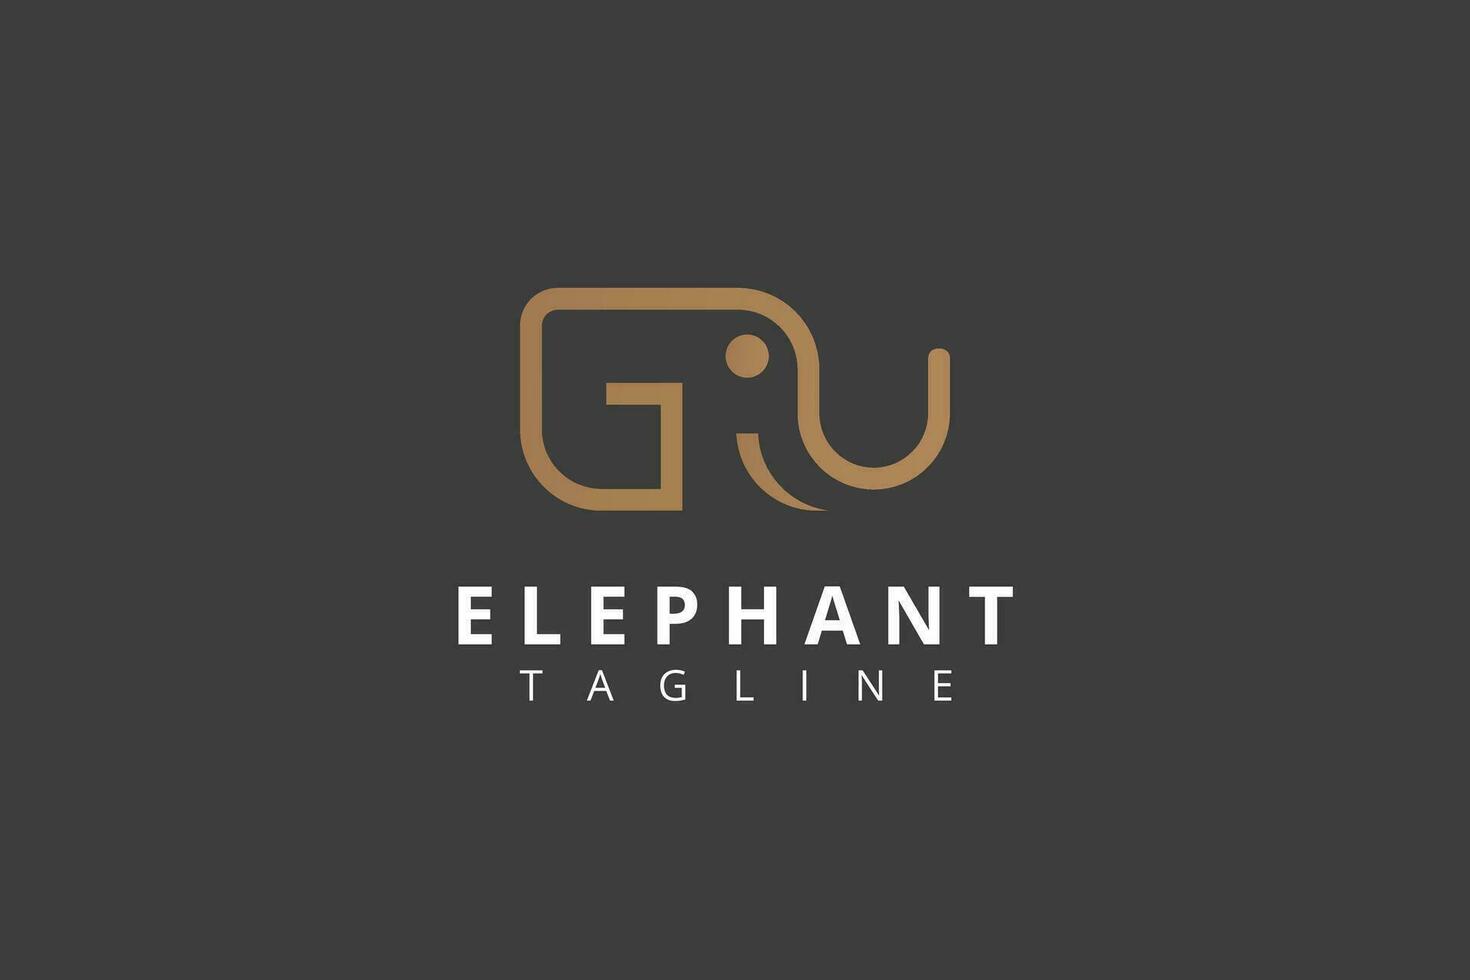 G Brief Logo Design Bildung ein Elefant vektor